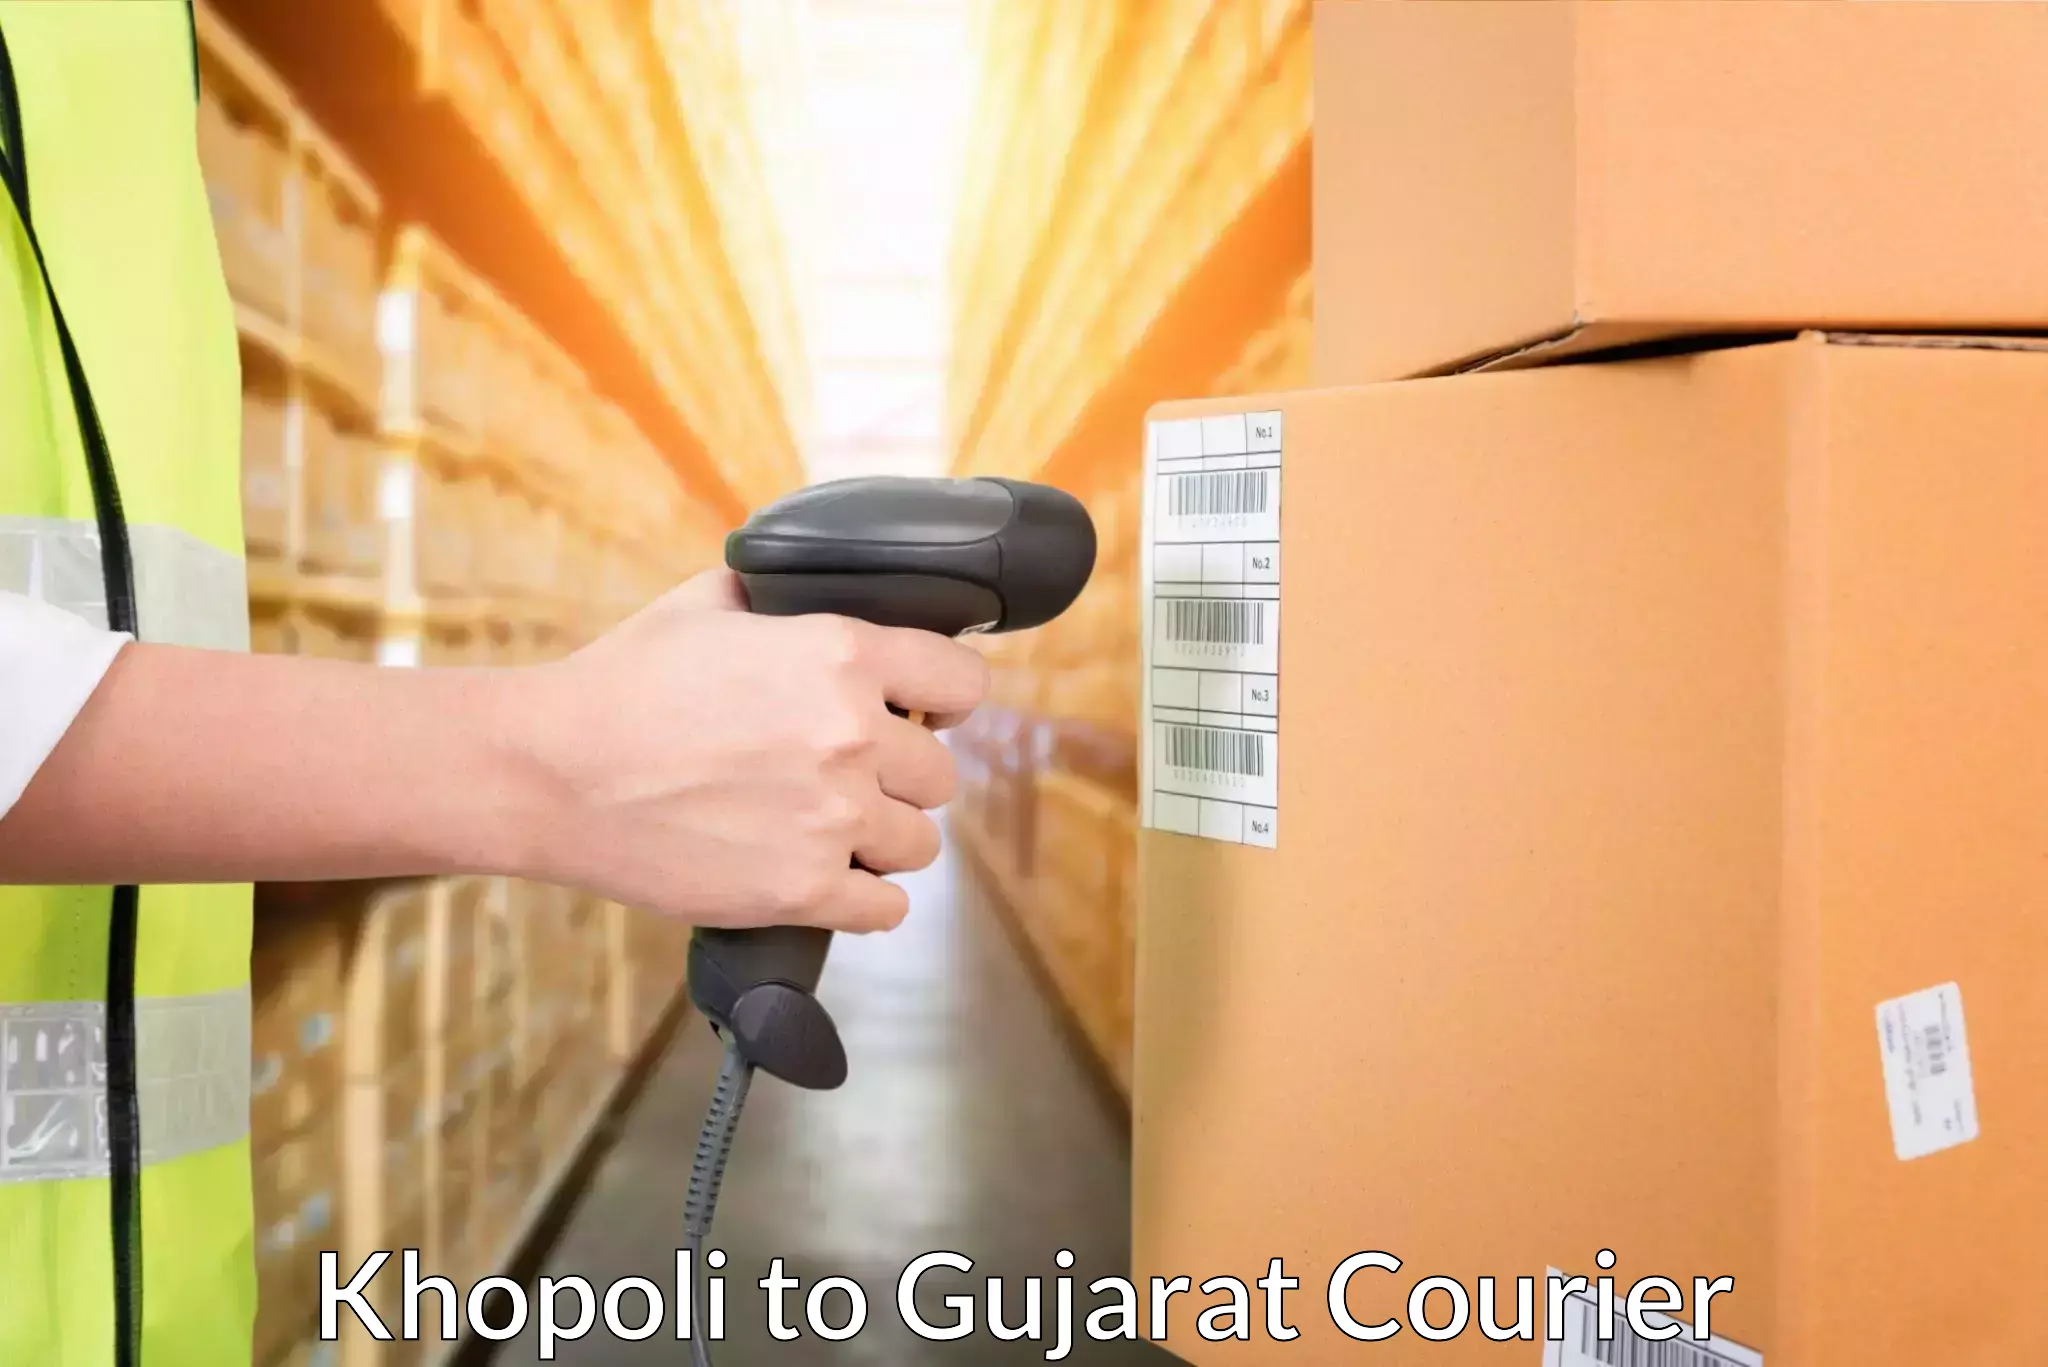 Global delivery options Khopoli to Morbi